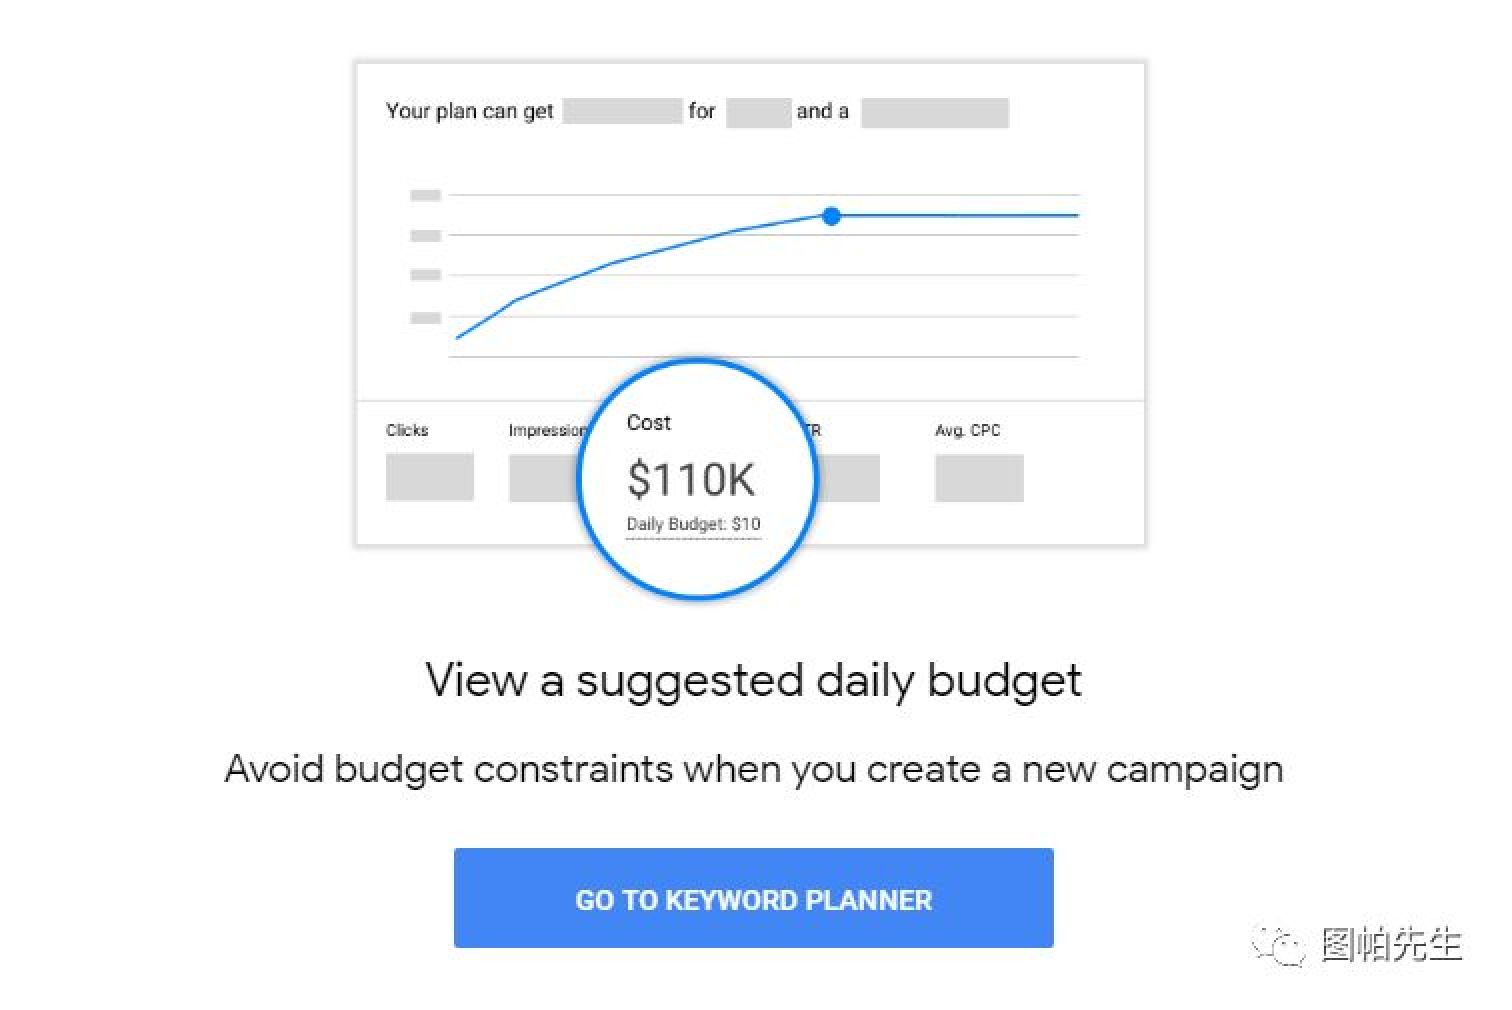 优化师才知道的简易谷歌广告Google Ads预算计算方法